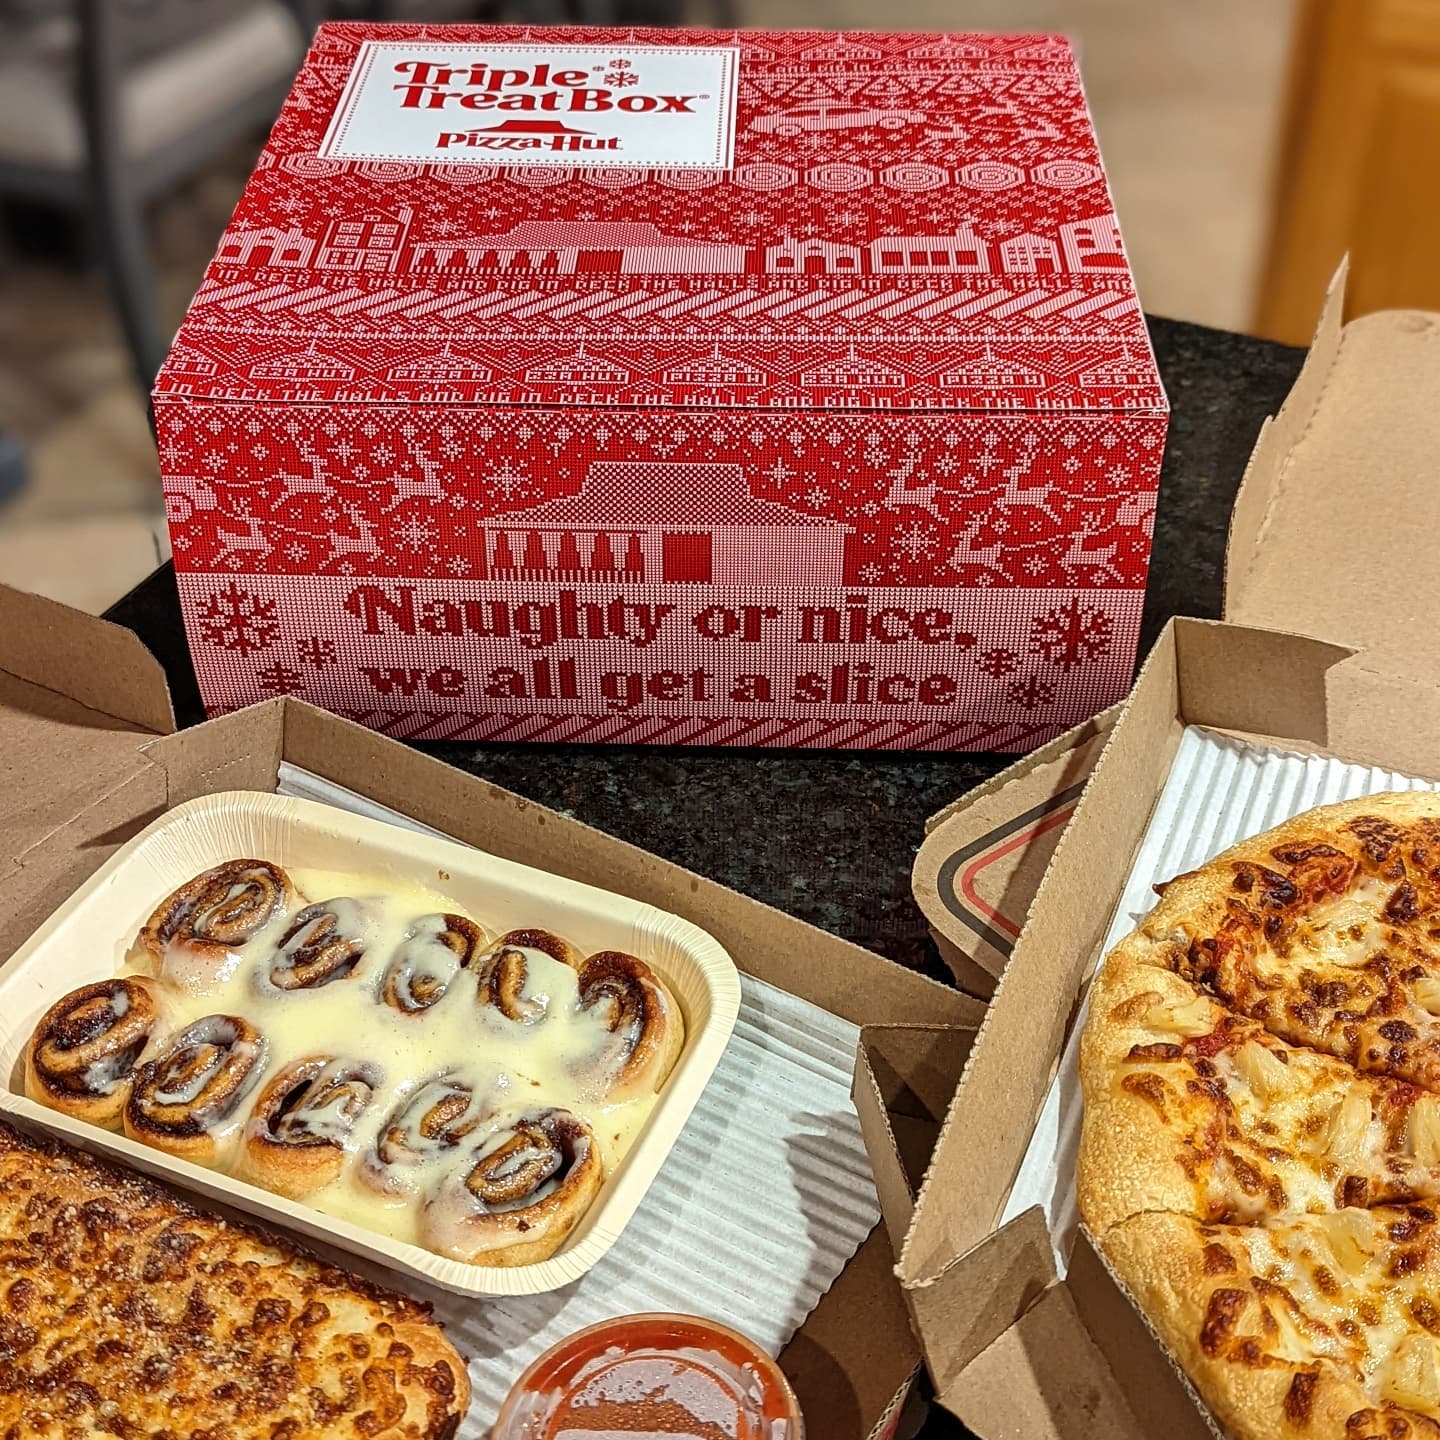 Pizza Hut Triple Treat Box